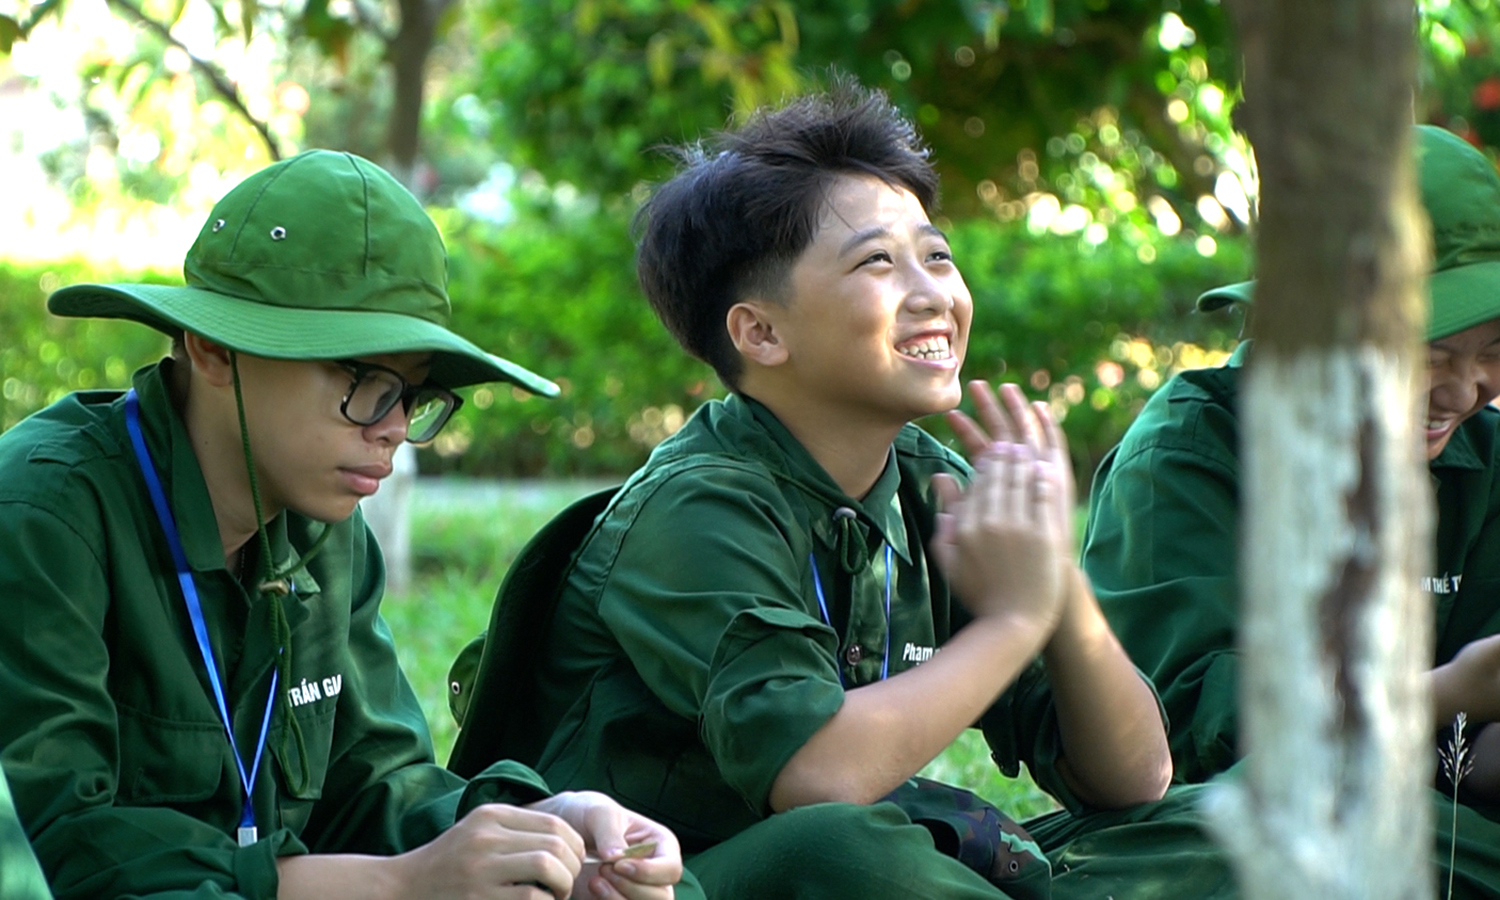 "Học kỳ trong Quân đội"-sân chơi thiết thực cho thanh thiếu niên dịp hè